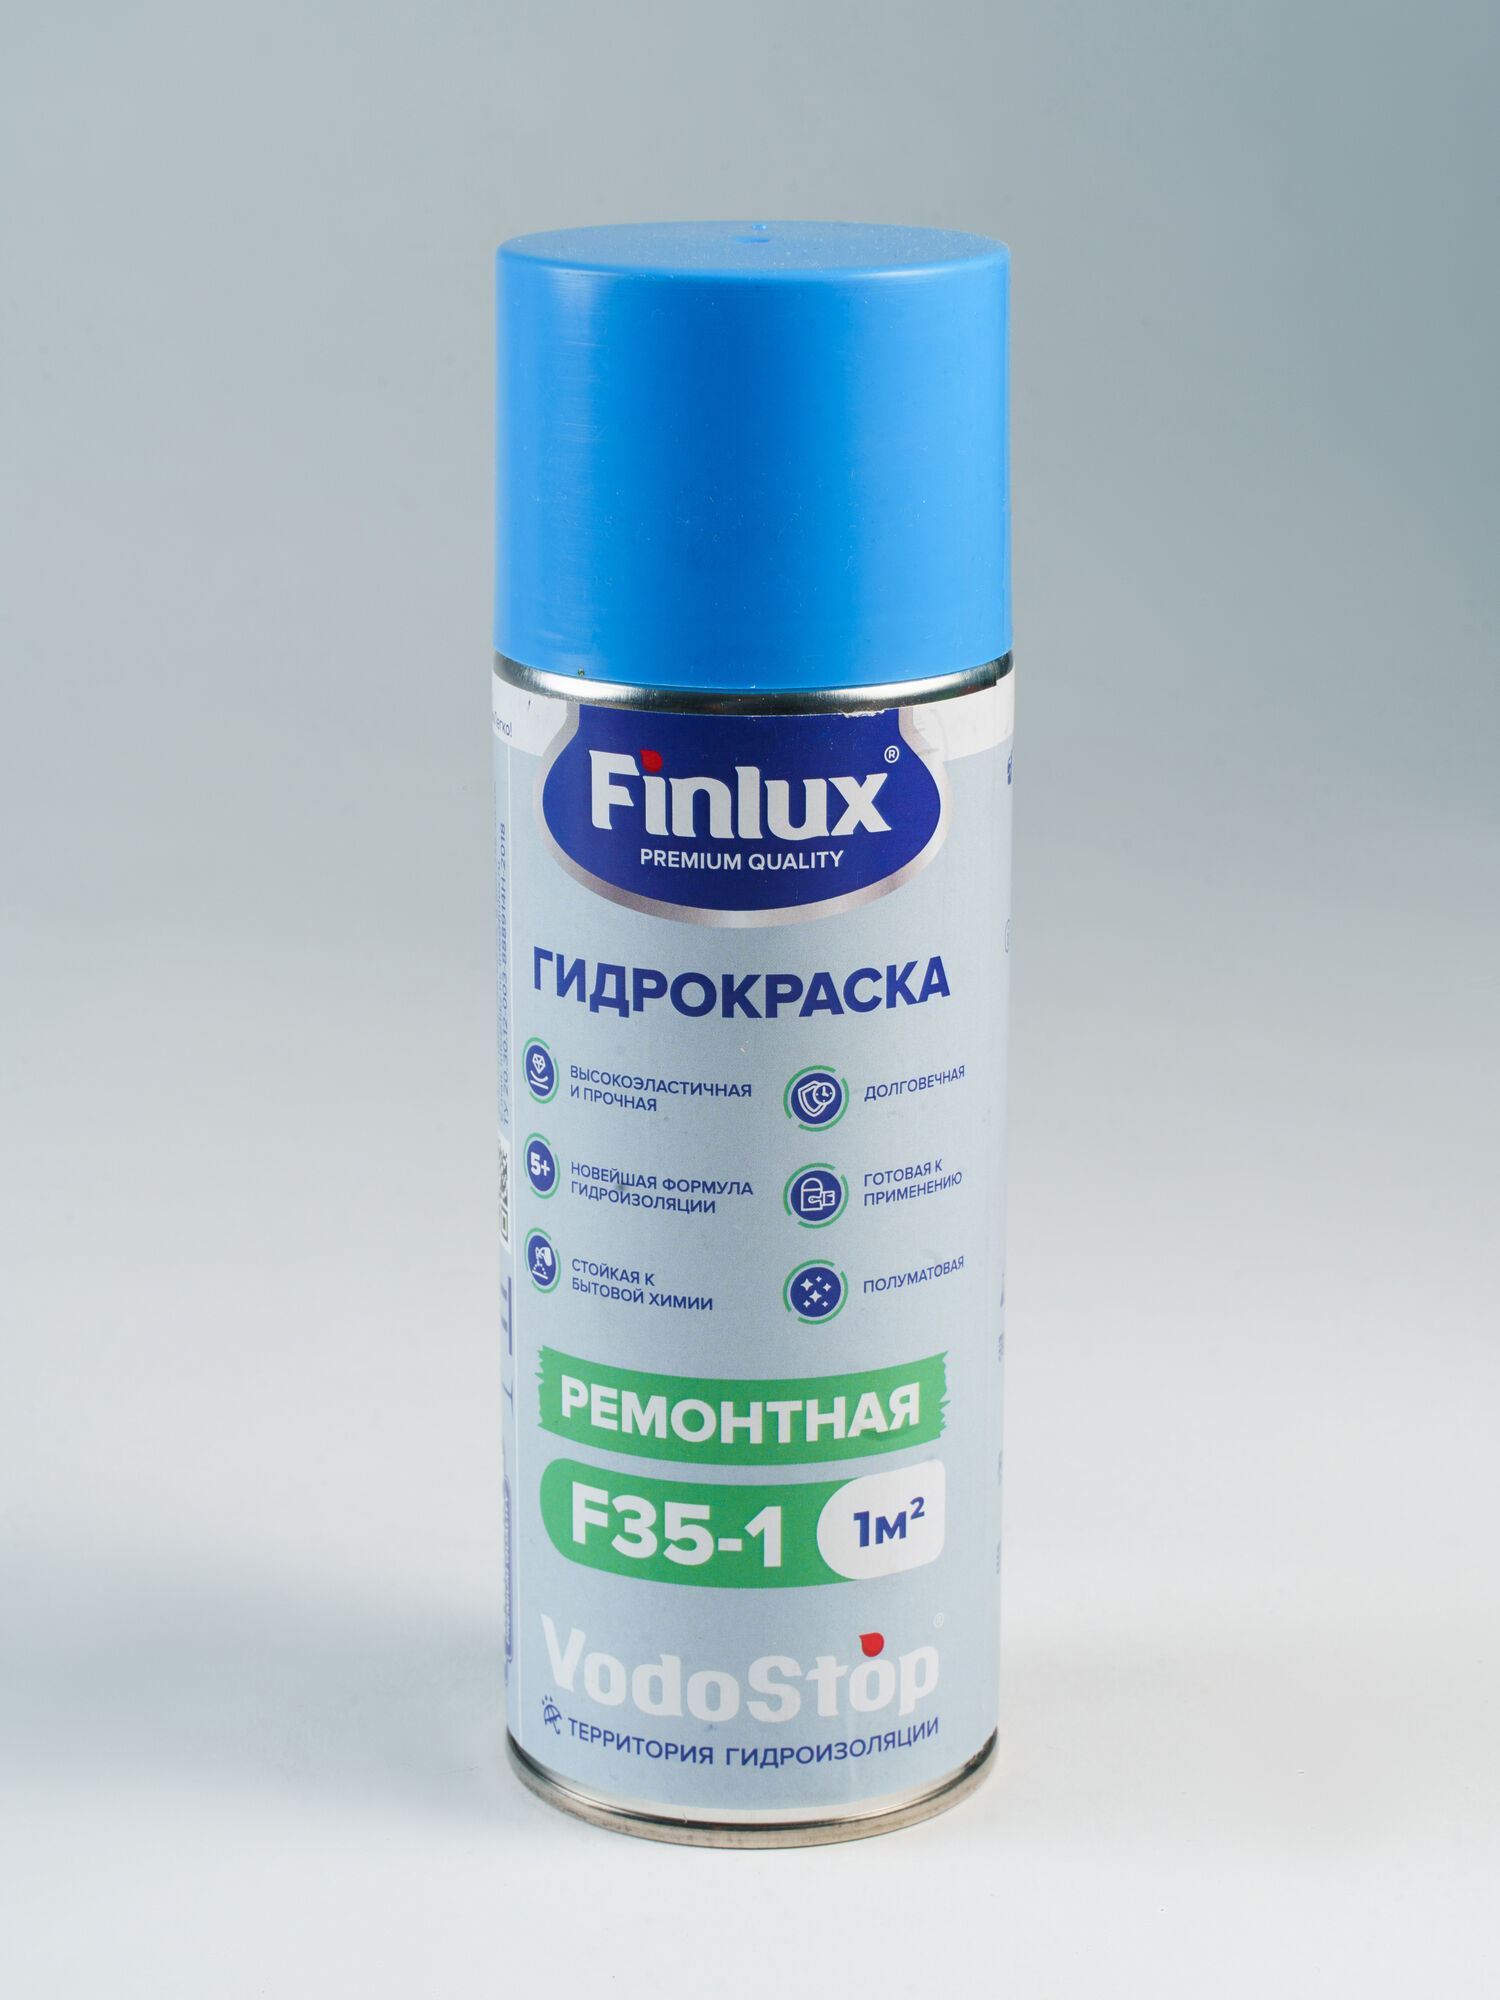 Аэрозольная гидрокраска Finlux VodoStop F35-01 1 кв.м. Черный